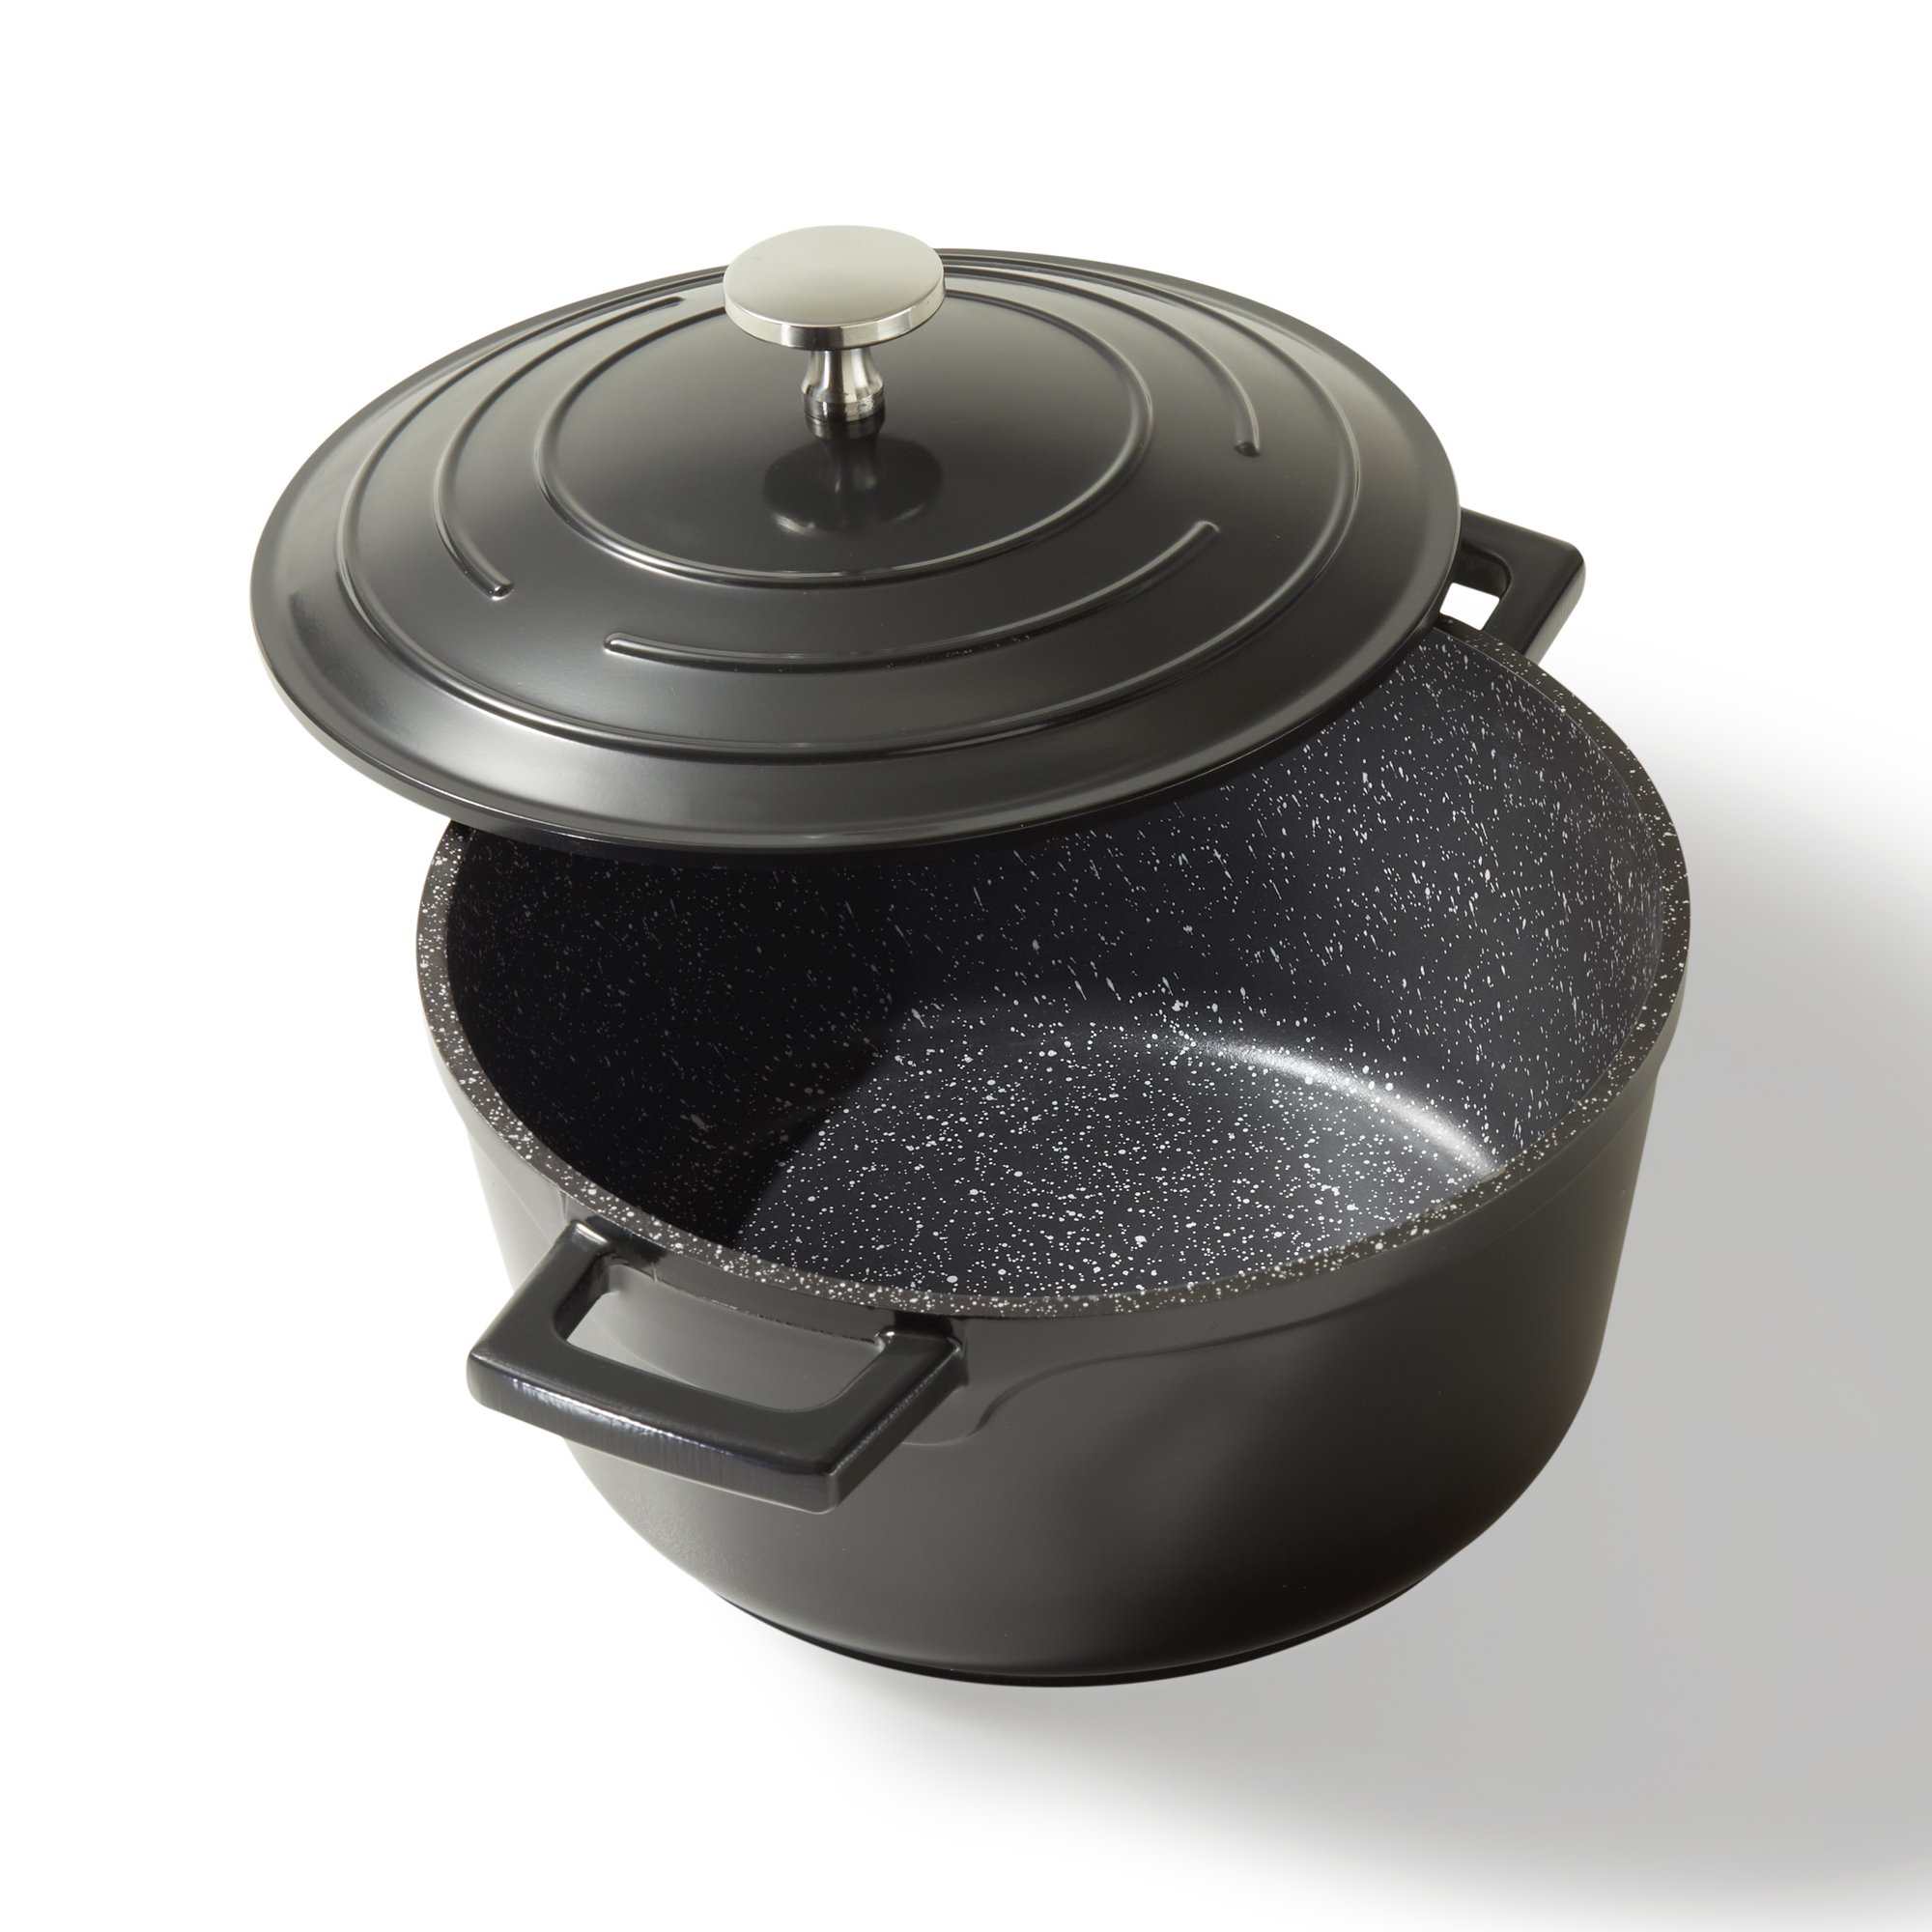 STONELINE® Gourmet asador 20 cm con tapa, apto para horno e inducción, revestimiento antiadherente, negro